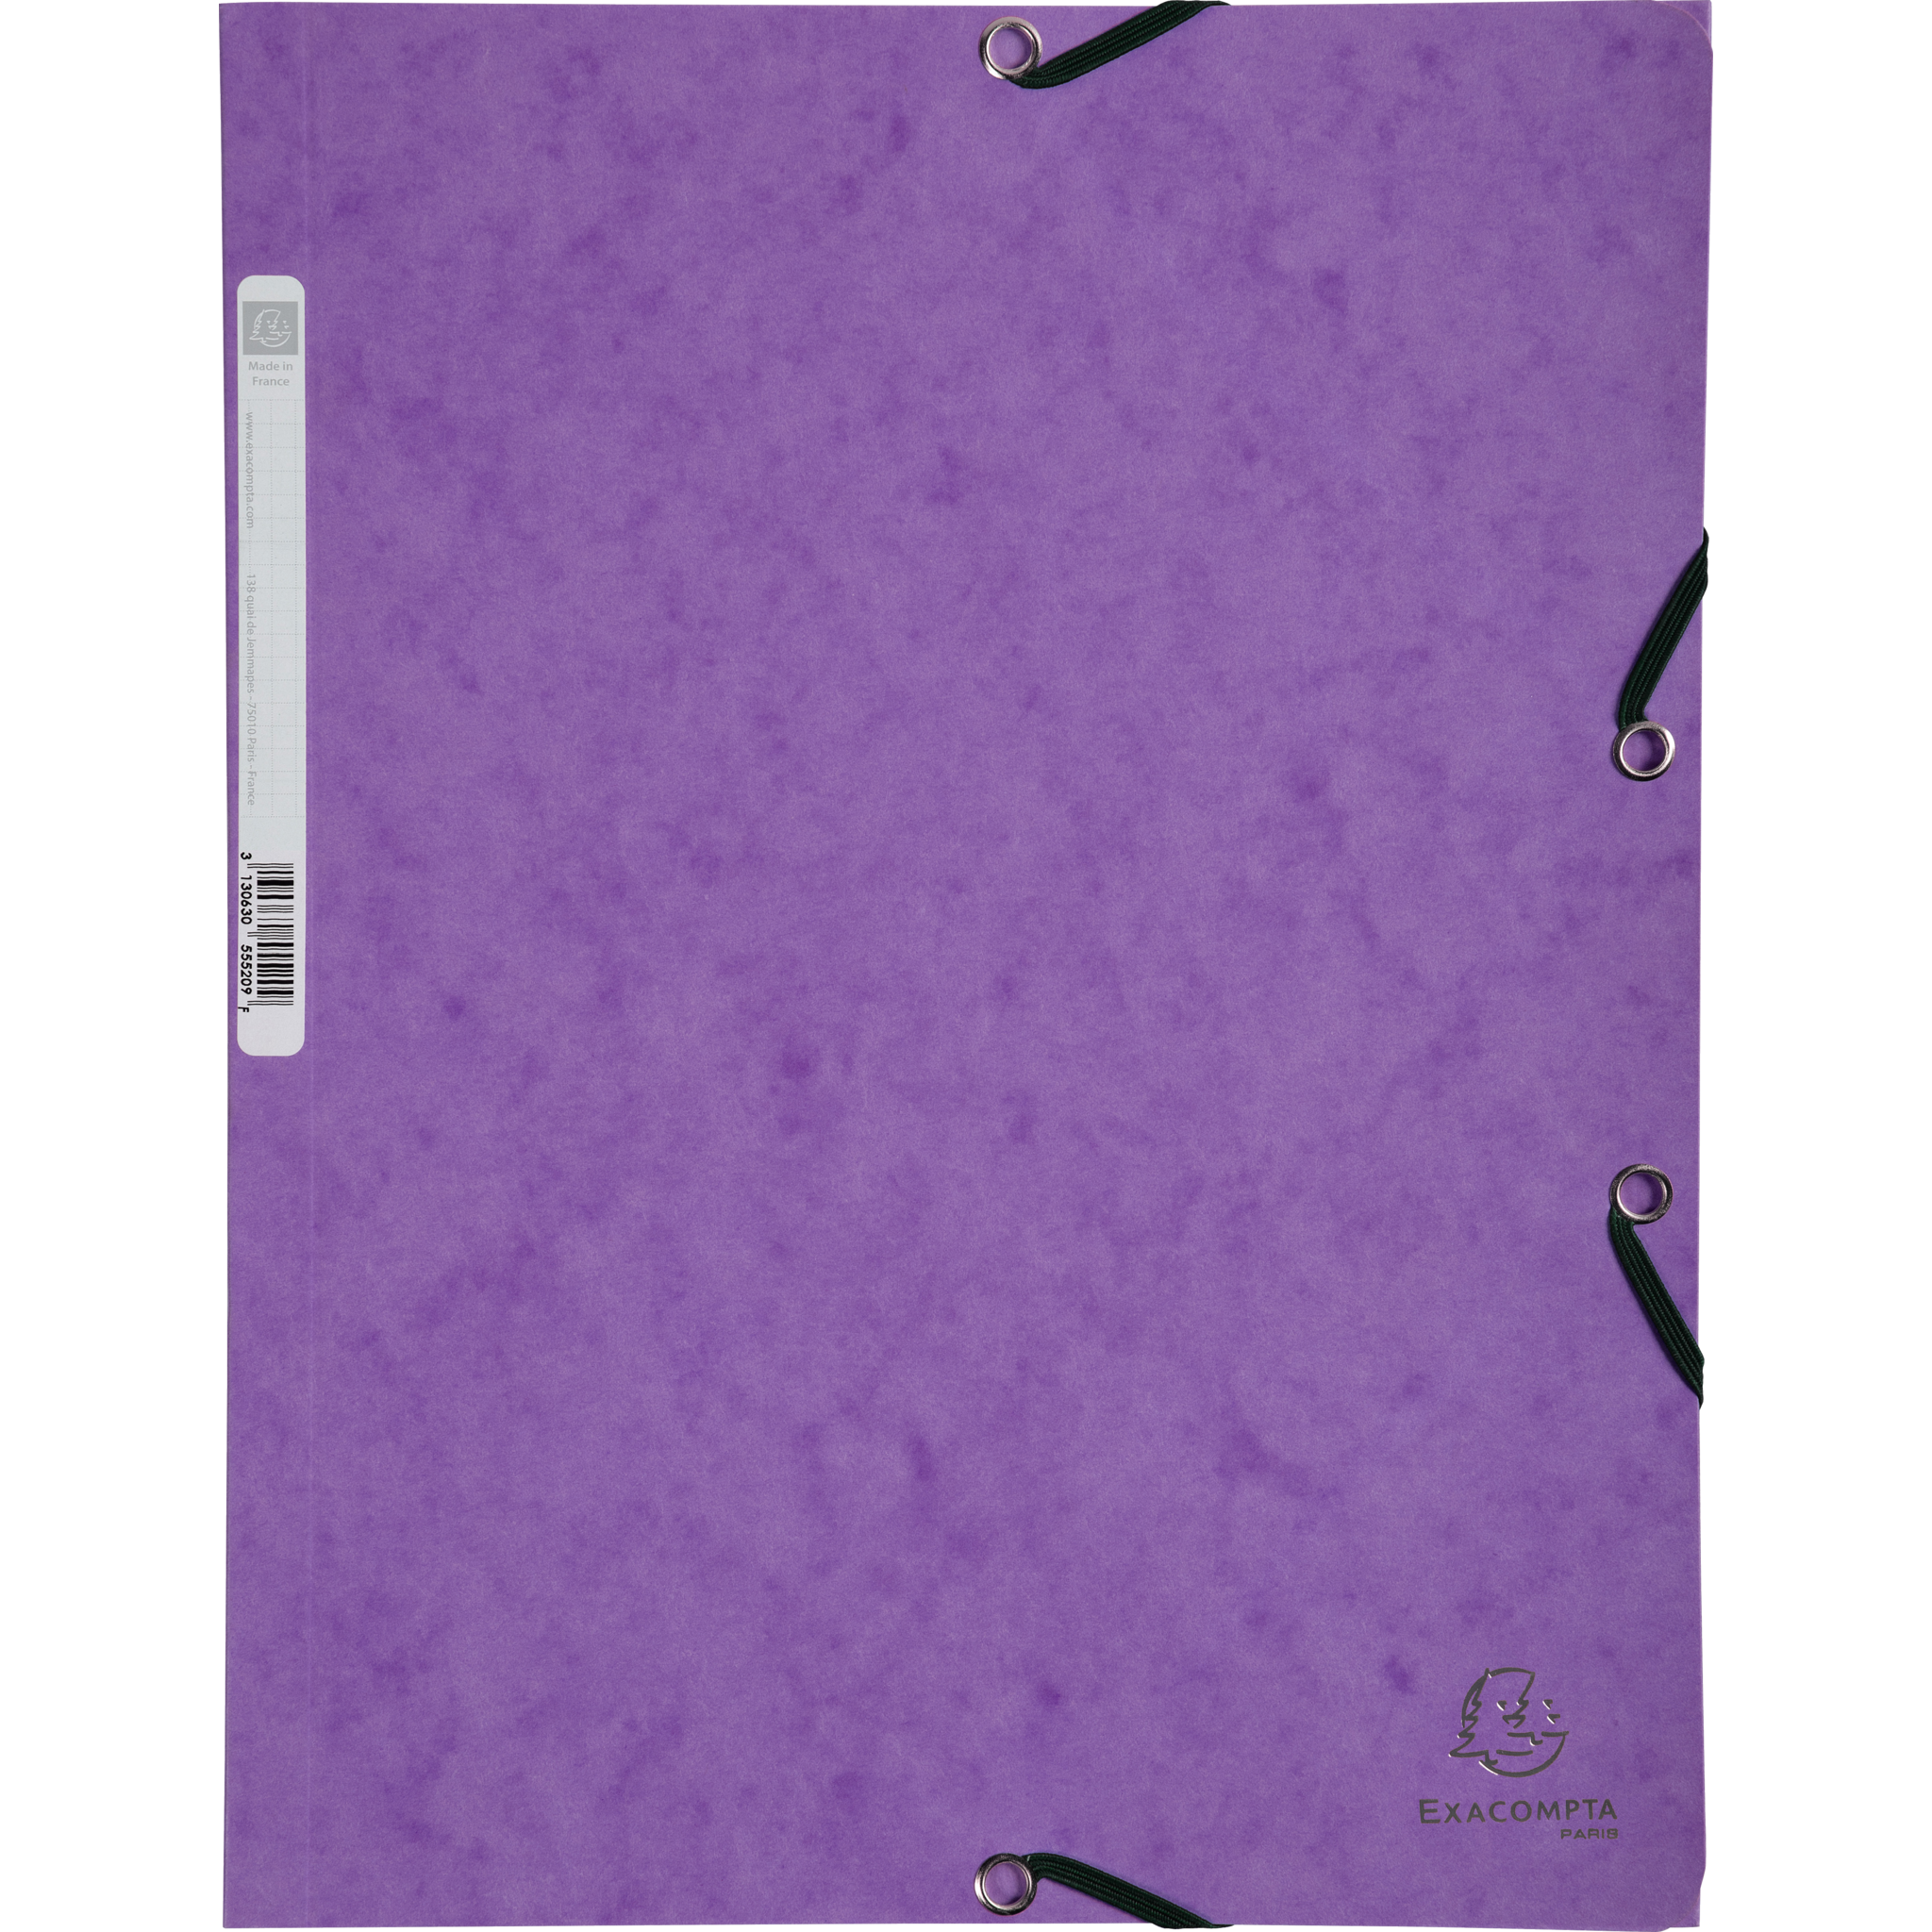 EXACOMPTA Sammelmappe mit Gummizug und 3 Klappen aus Colorspan-Karton 355g/qm, für Format DIN A4 - Violett